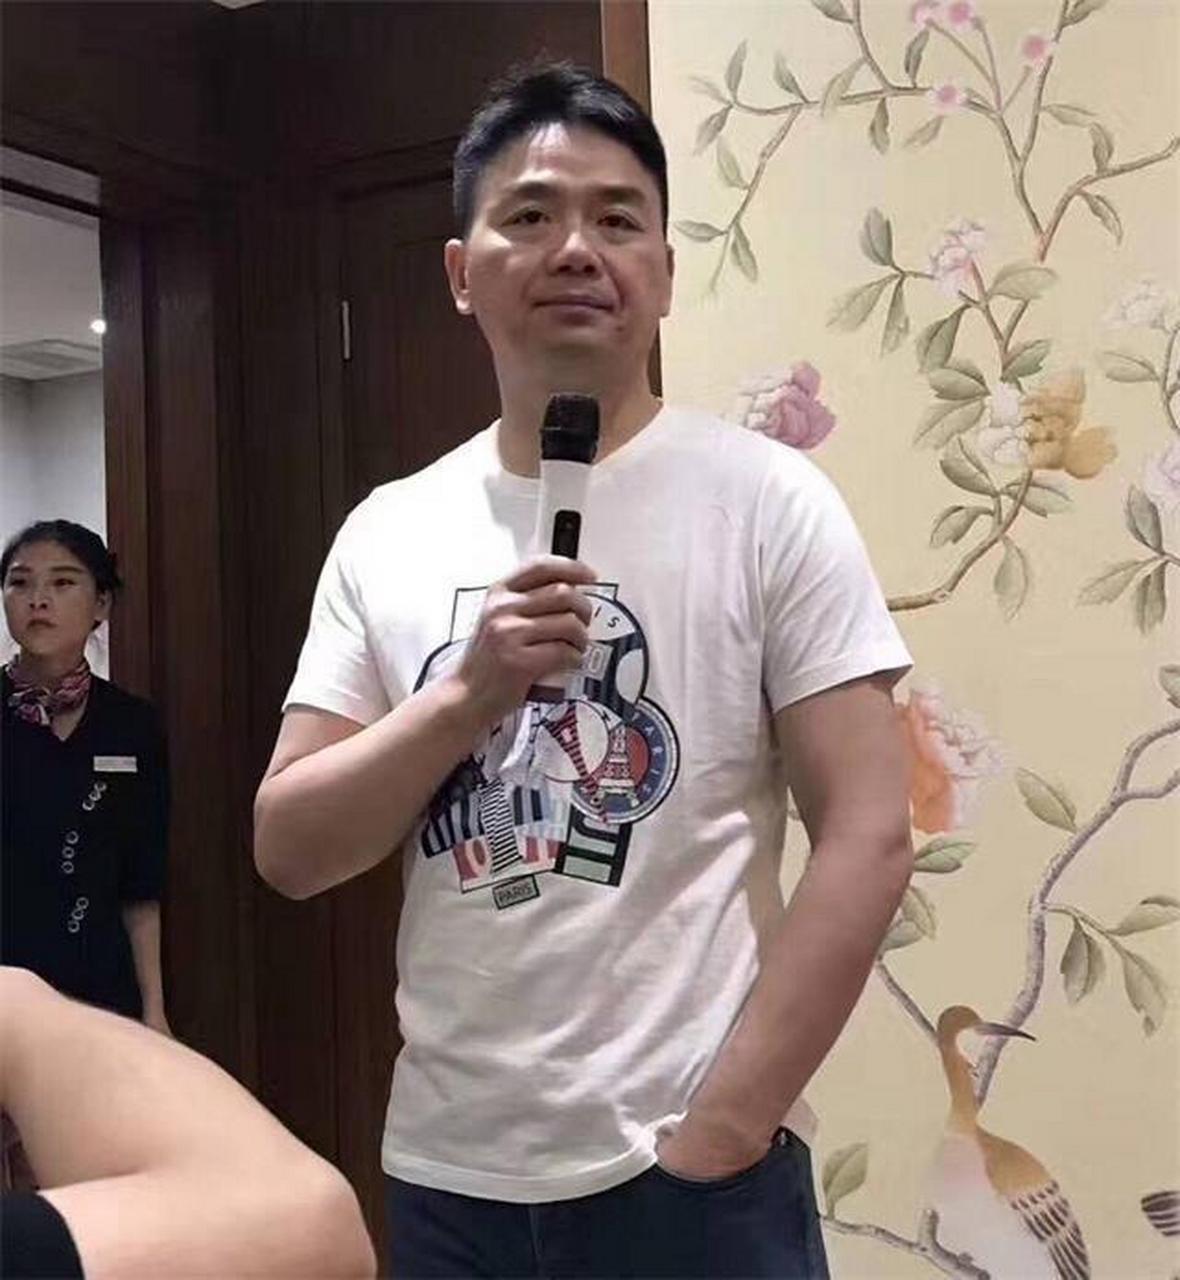 刘强东带着京东员工接受央视采访时,副总杜爽说她怀孕了,刘强东一开始